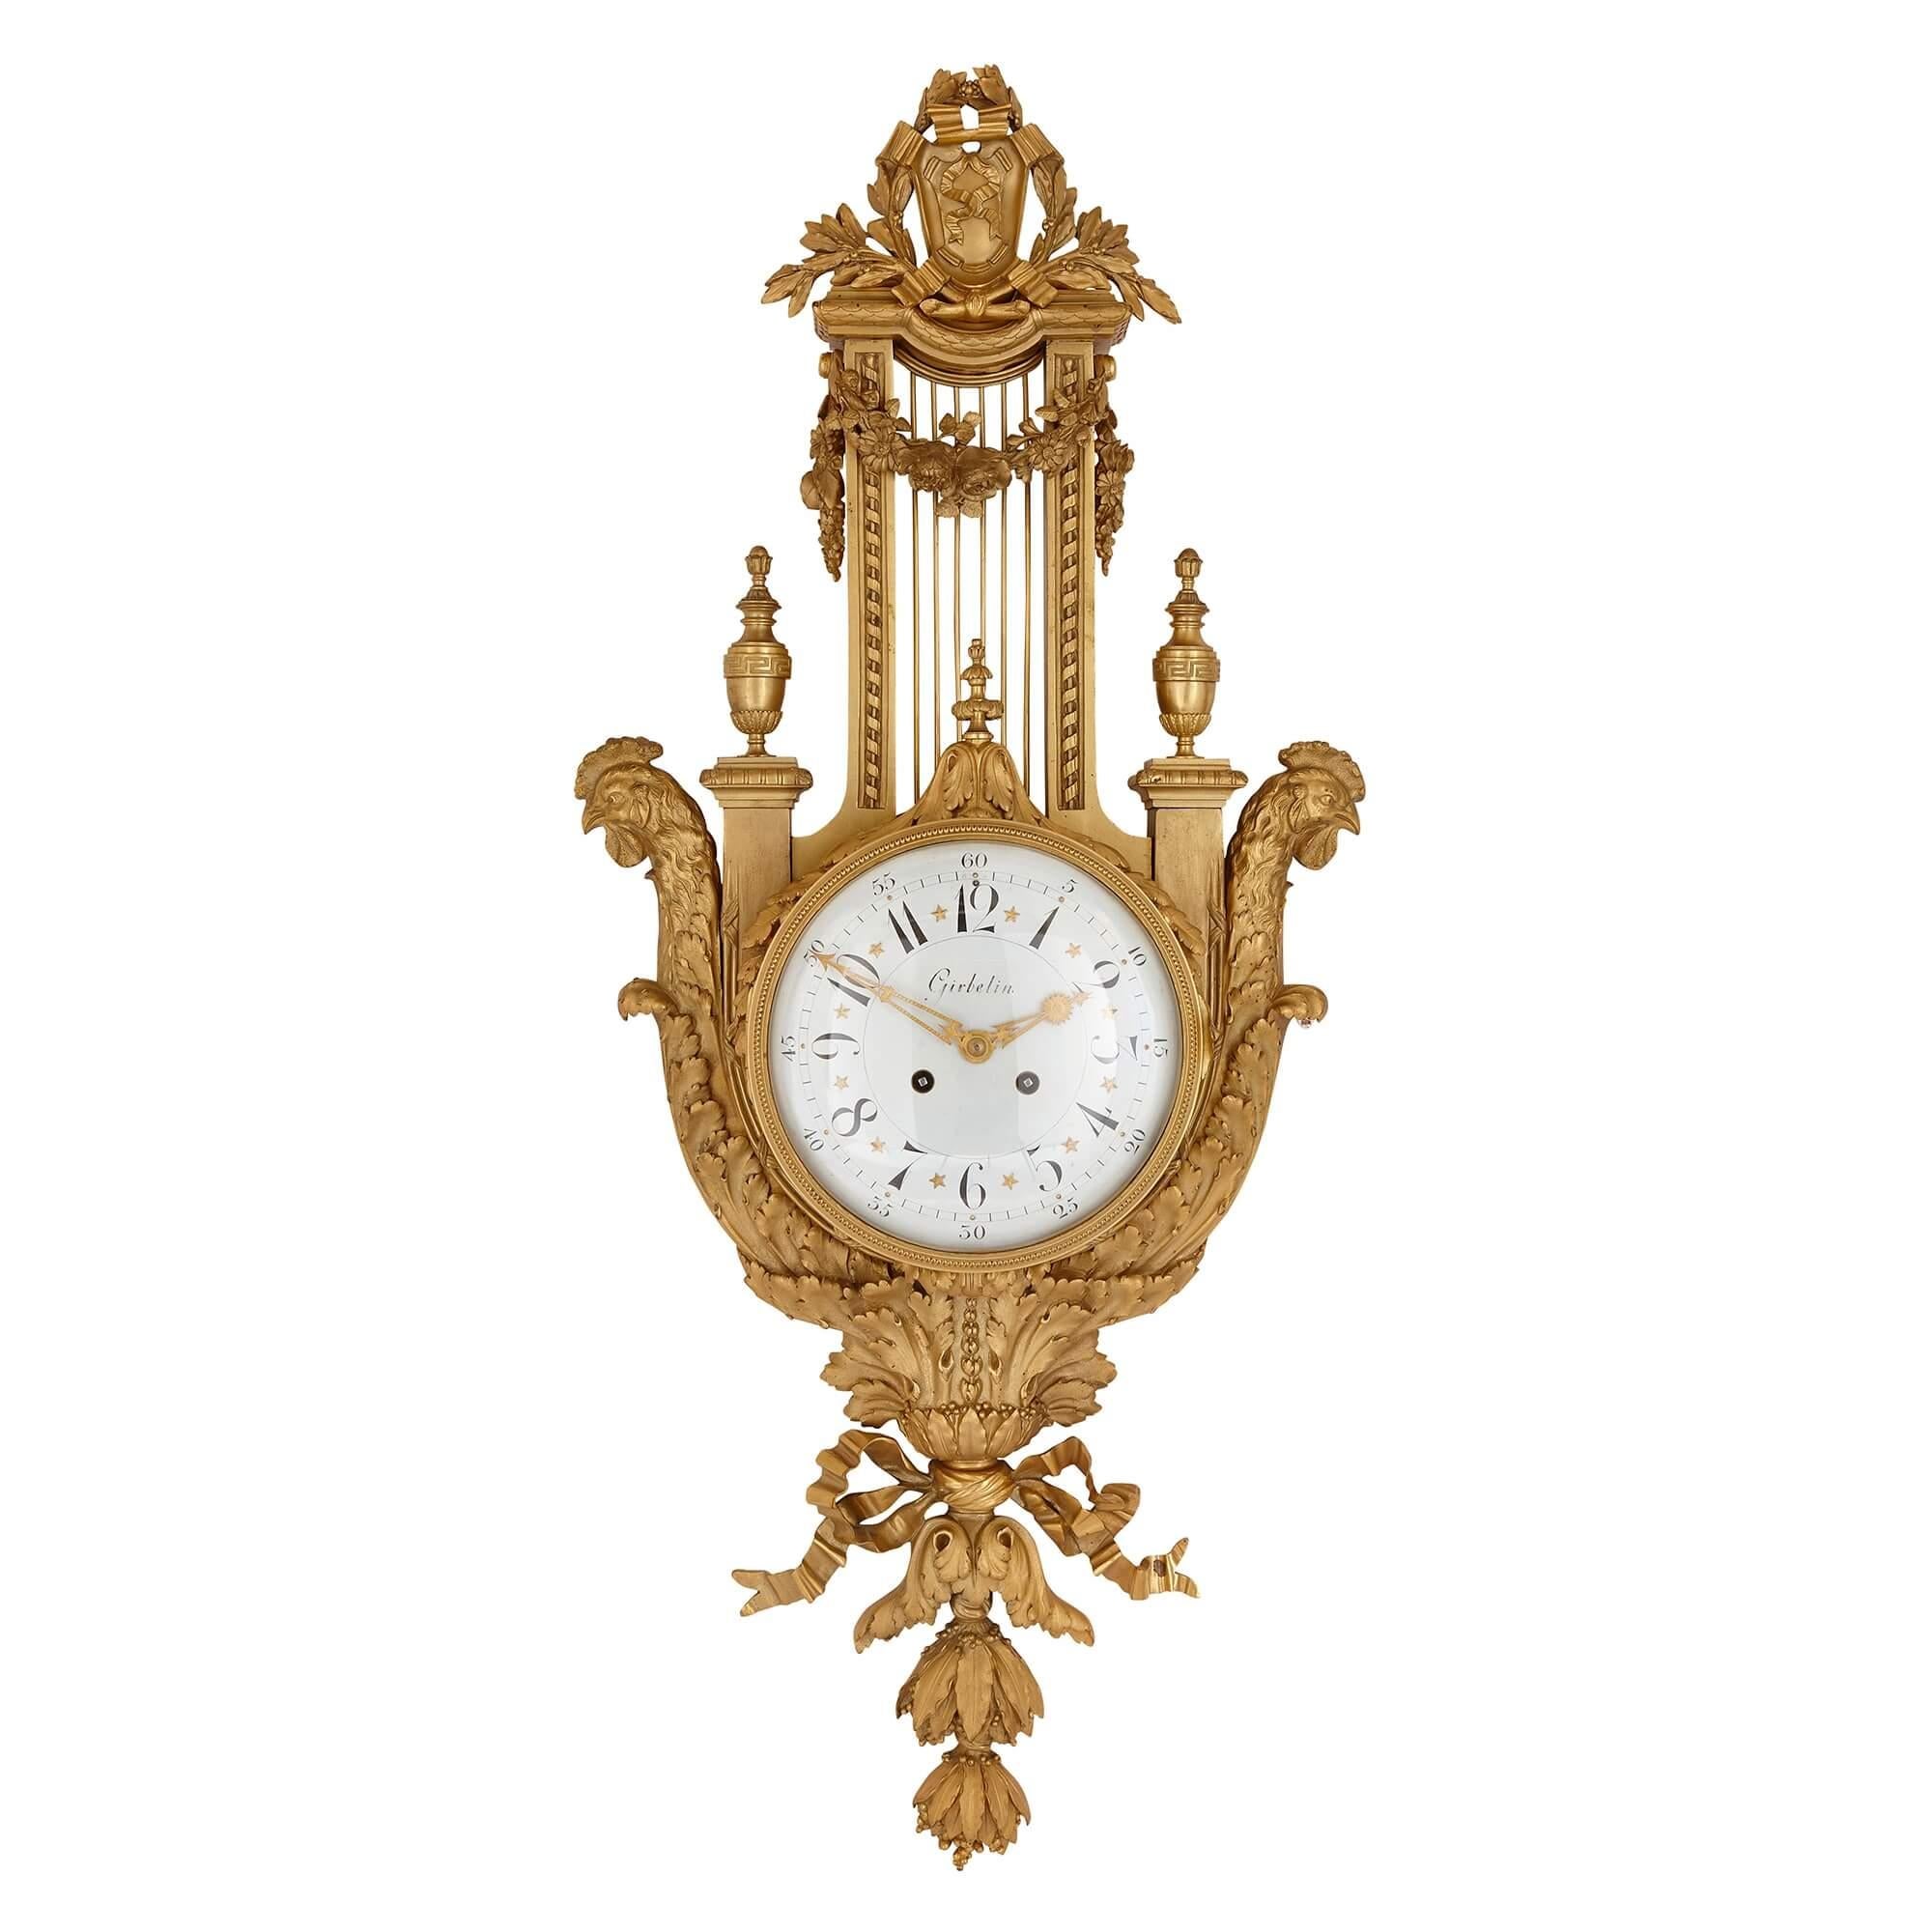 Ce bel ensemble comprend une horloge cartel et un baromètre, tous deux entièrement réalisés en bronze doré. Les boîtiers de l'horloge et du baromètre sont identiques, et prennent la forme d'une lyre. Les cadrans circulaires sont placés au centre,